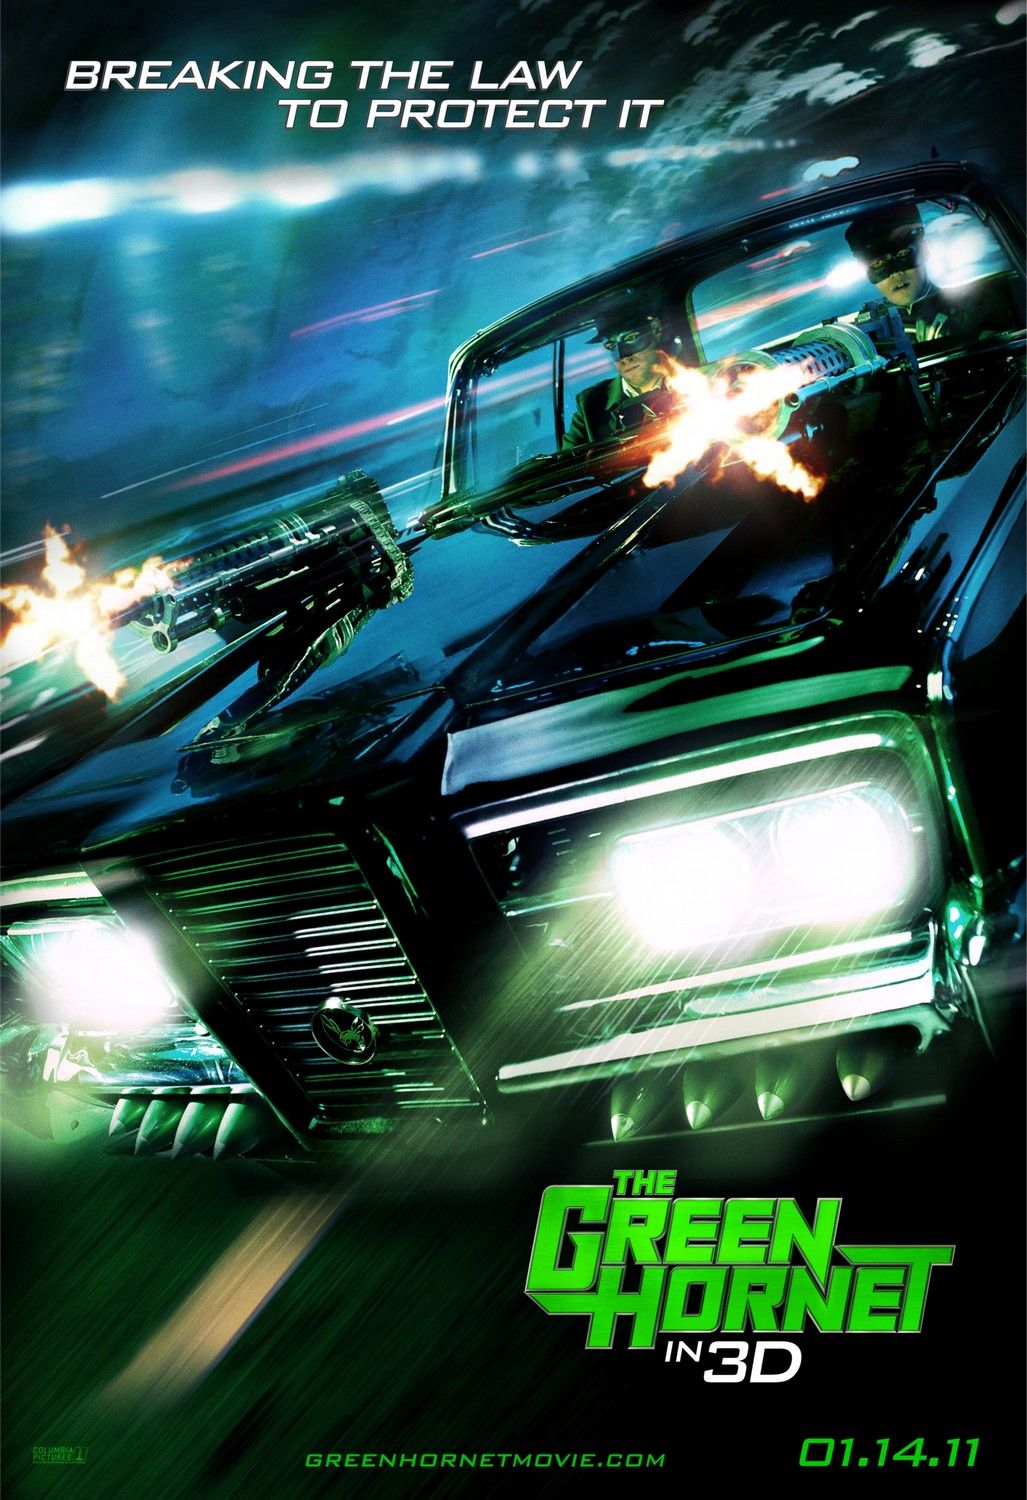 The Green Hornet #8